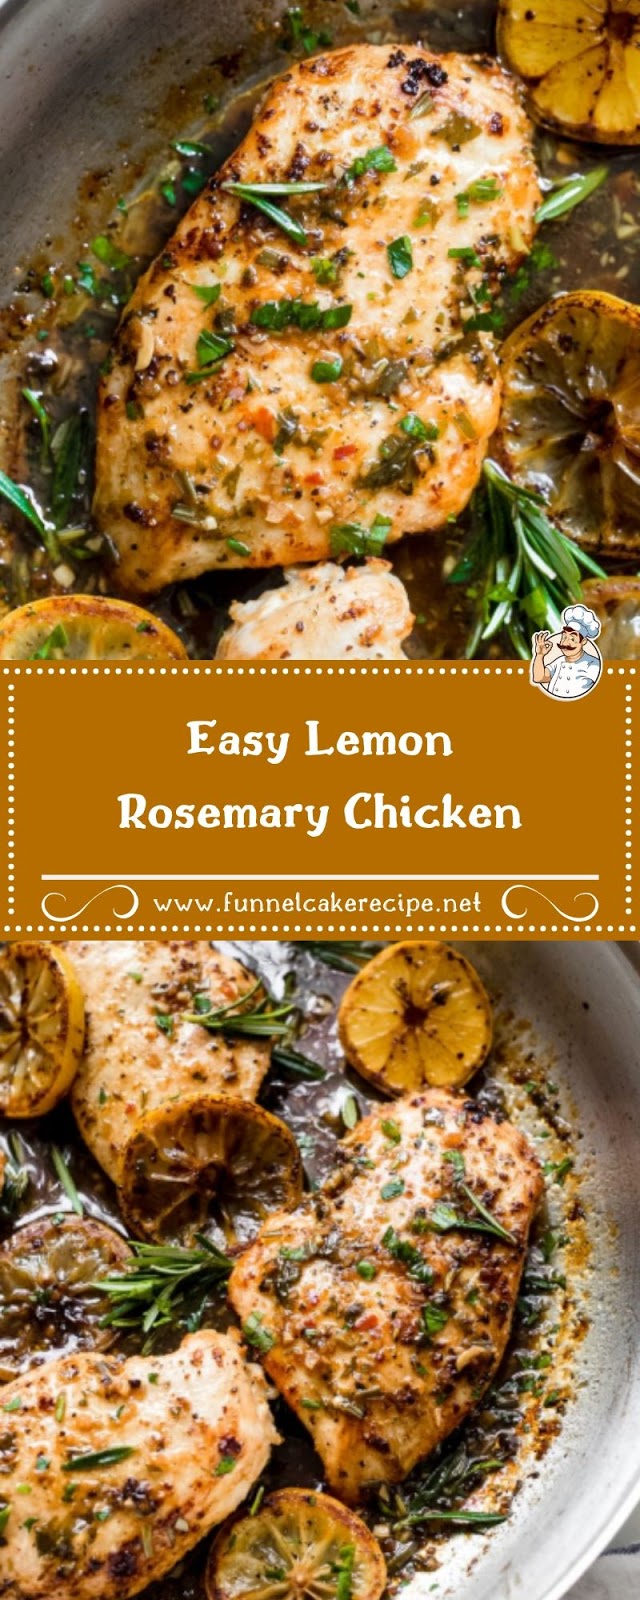 Easy Lemon Rosemary Chicken